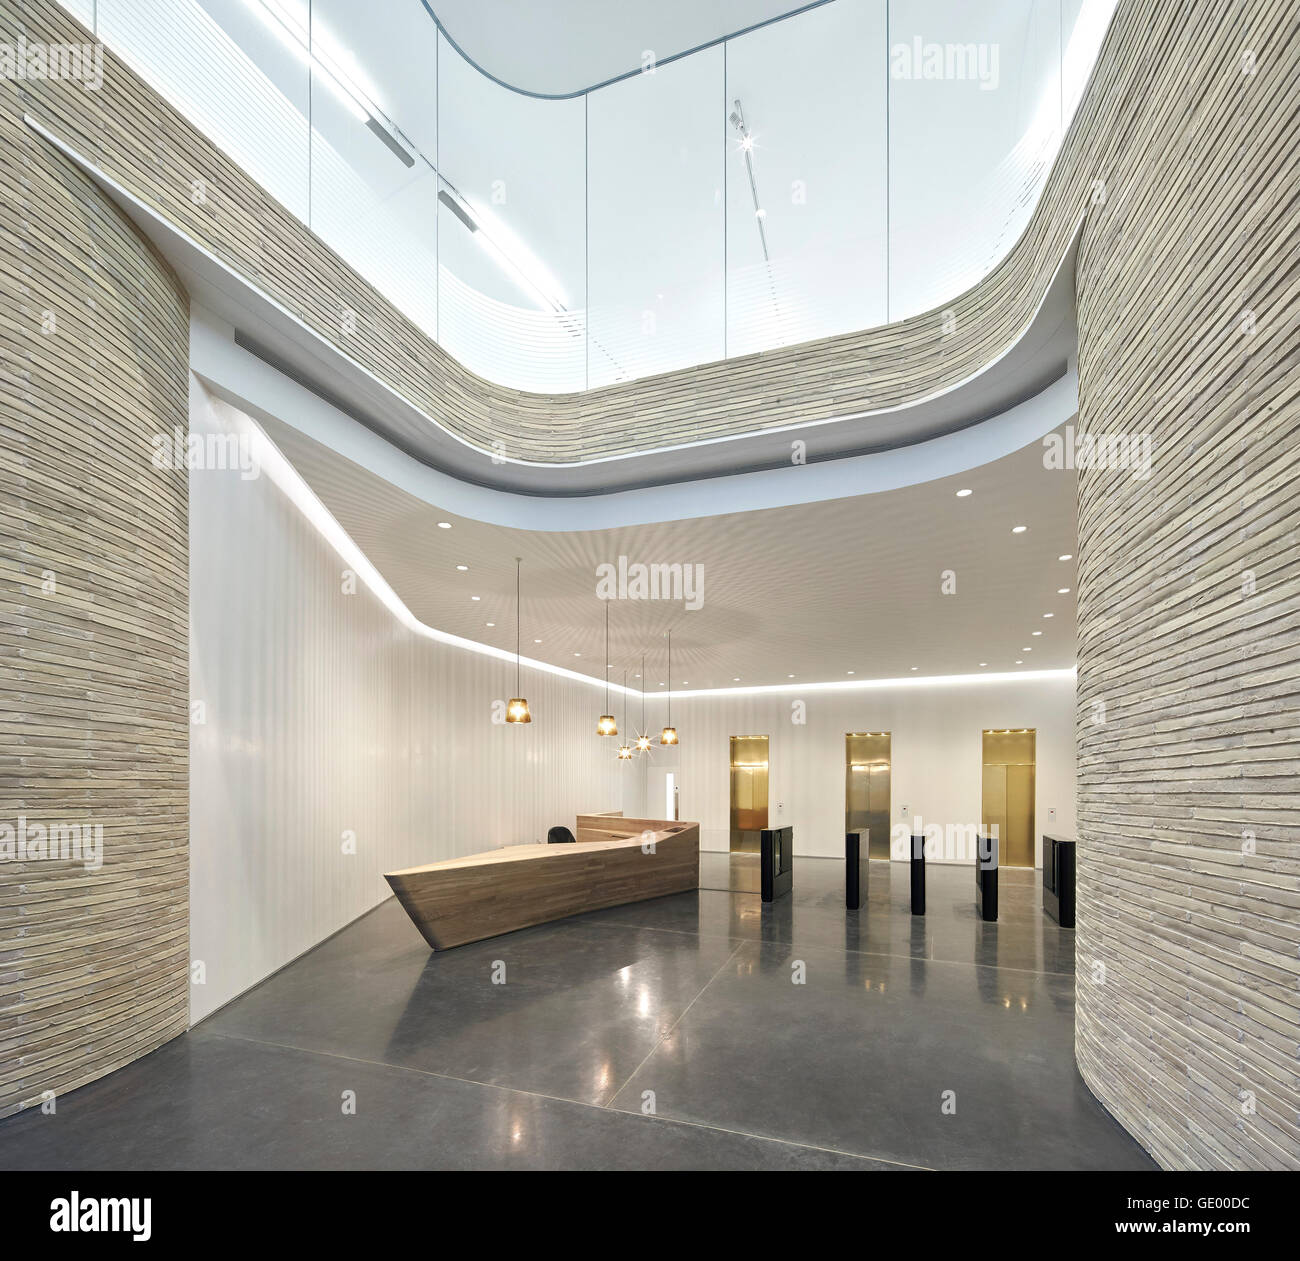 L'atrium d'entrée avec vue sur la réception. Turnmill Building, Londres, Royaume-Uni. Architecte : Piercy & Company, 2015. Banque D'Images